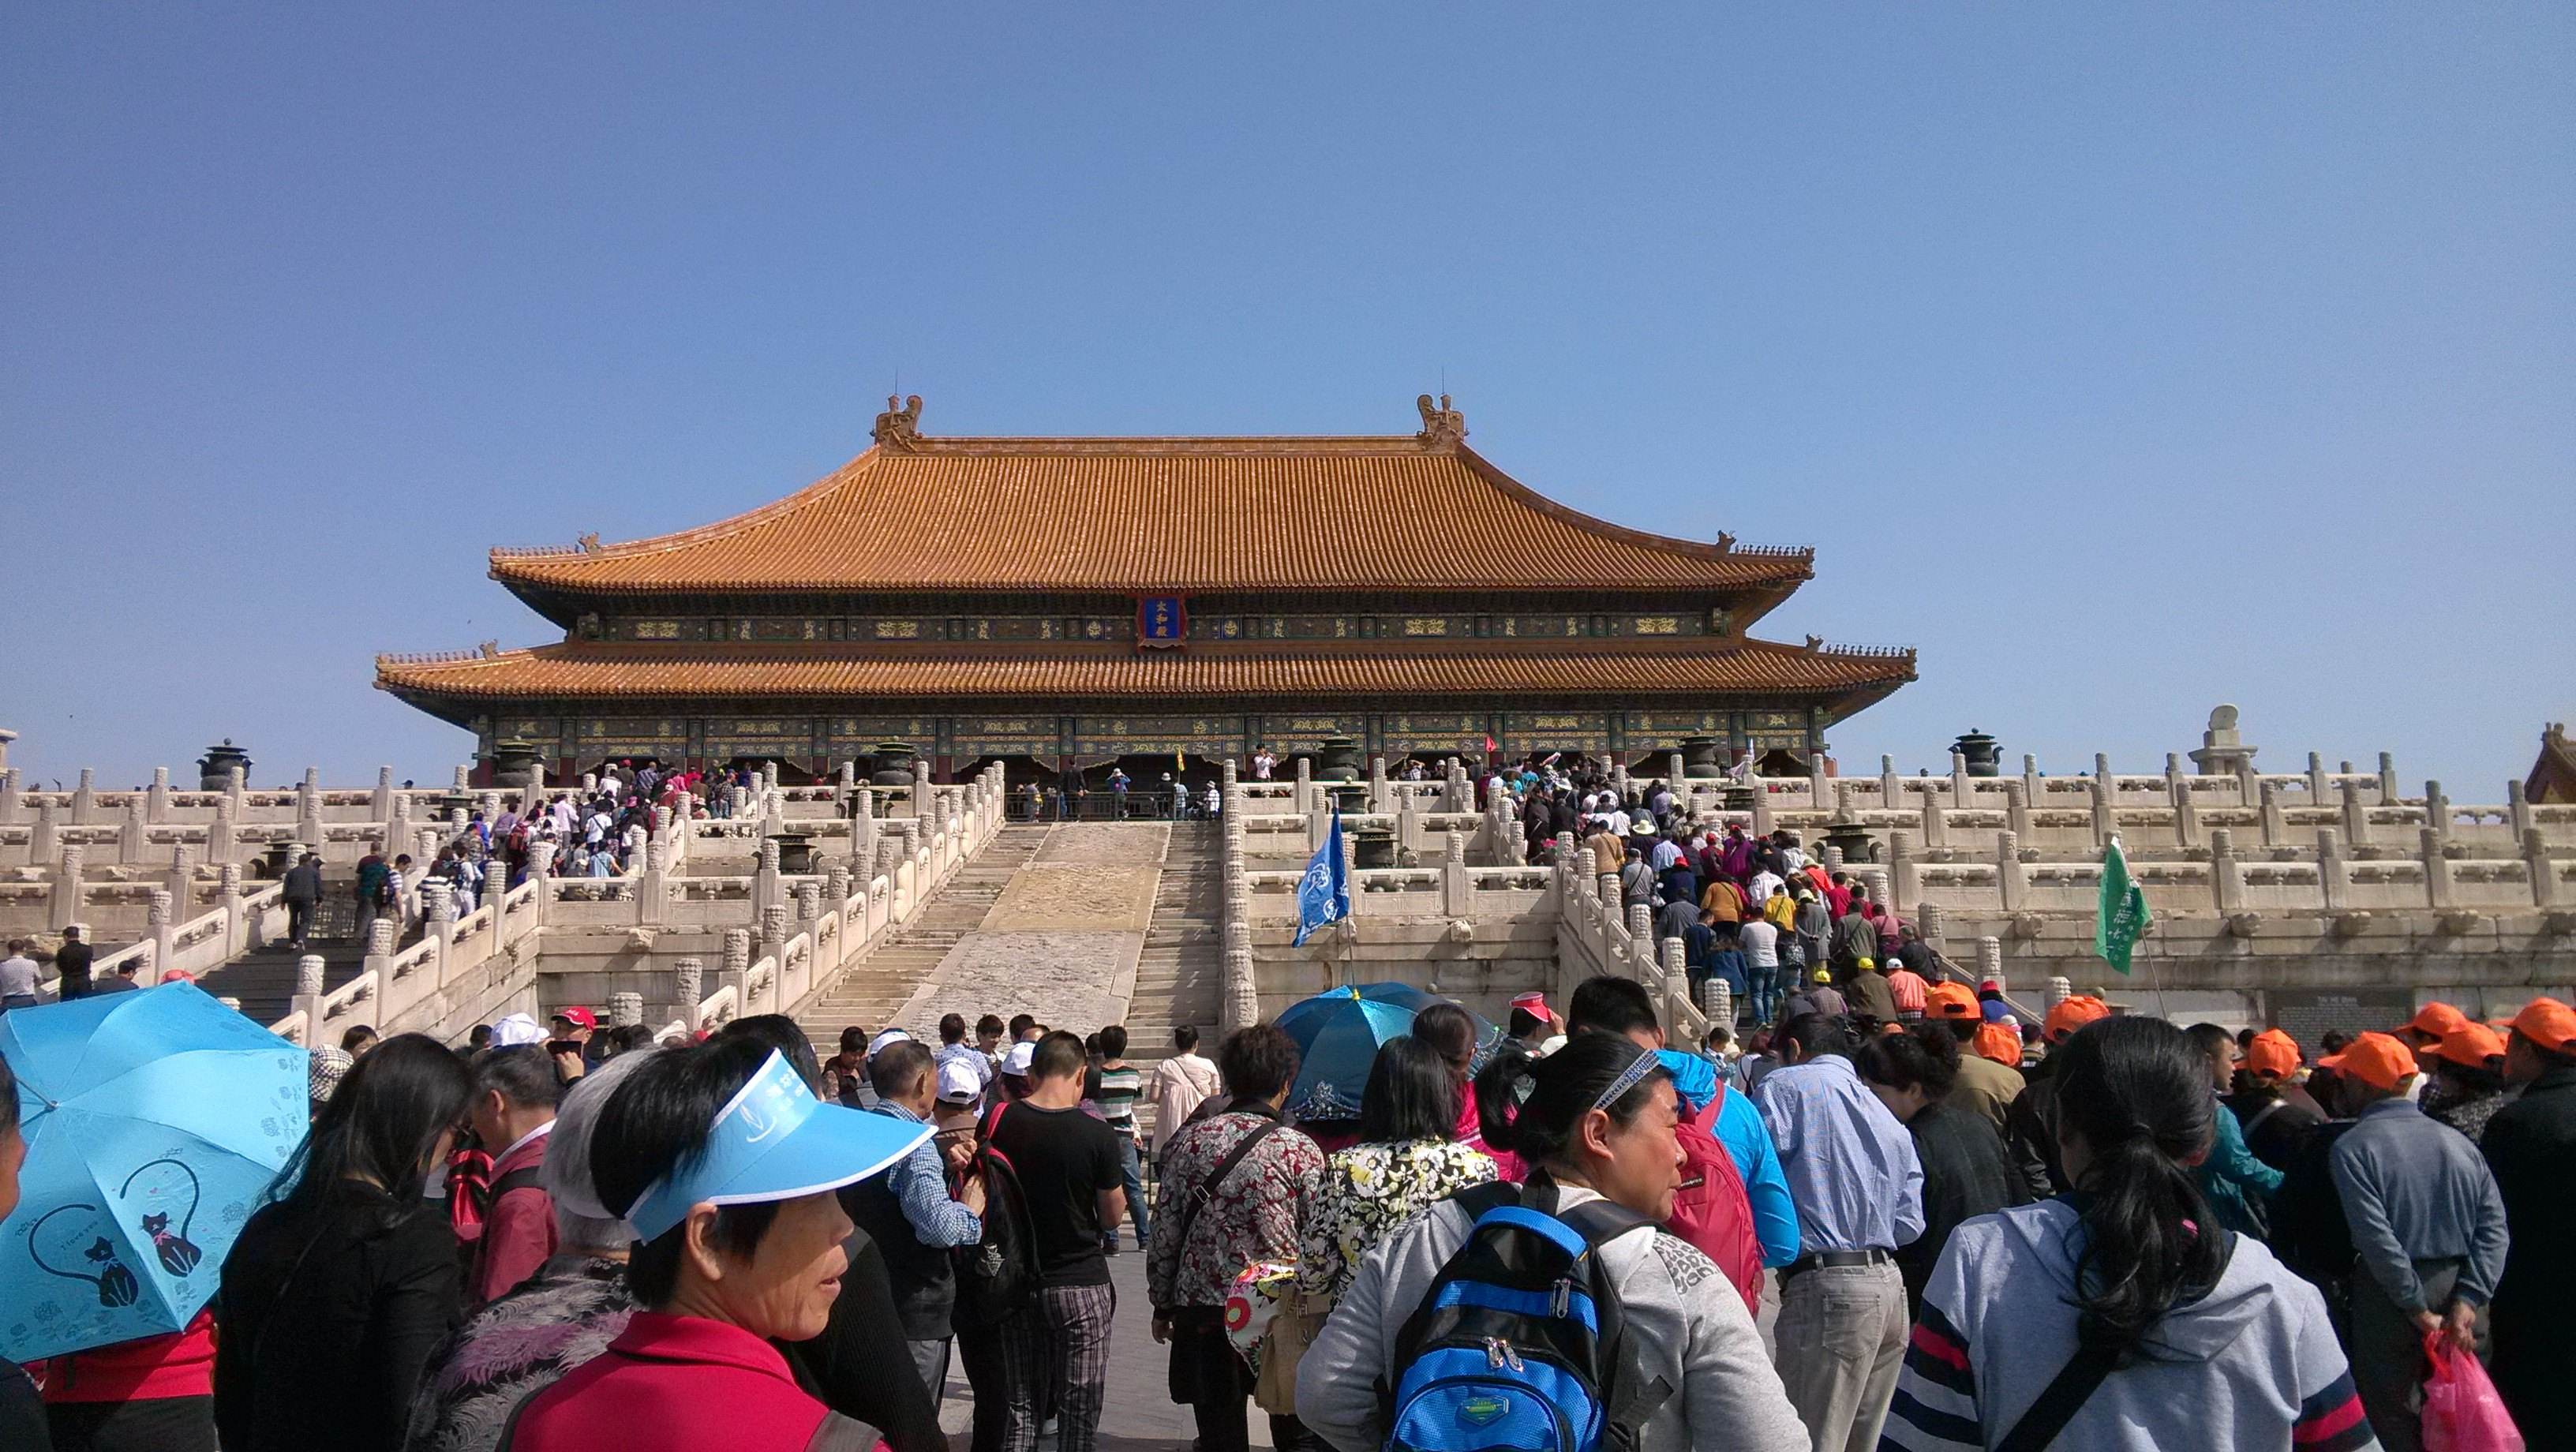 暑期跟团游:中国游客仍偏爱跟团旅游 私家团受